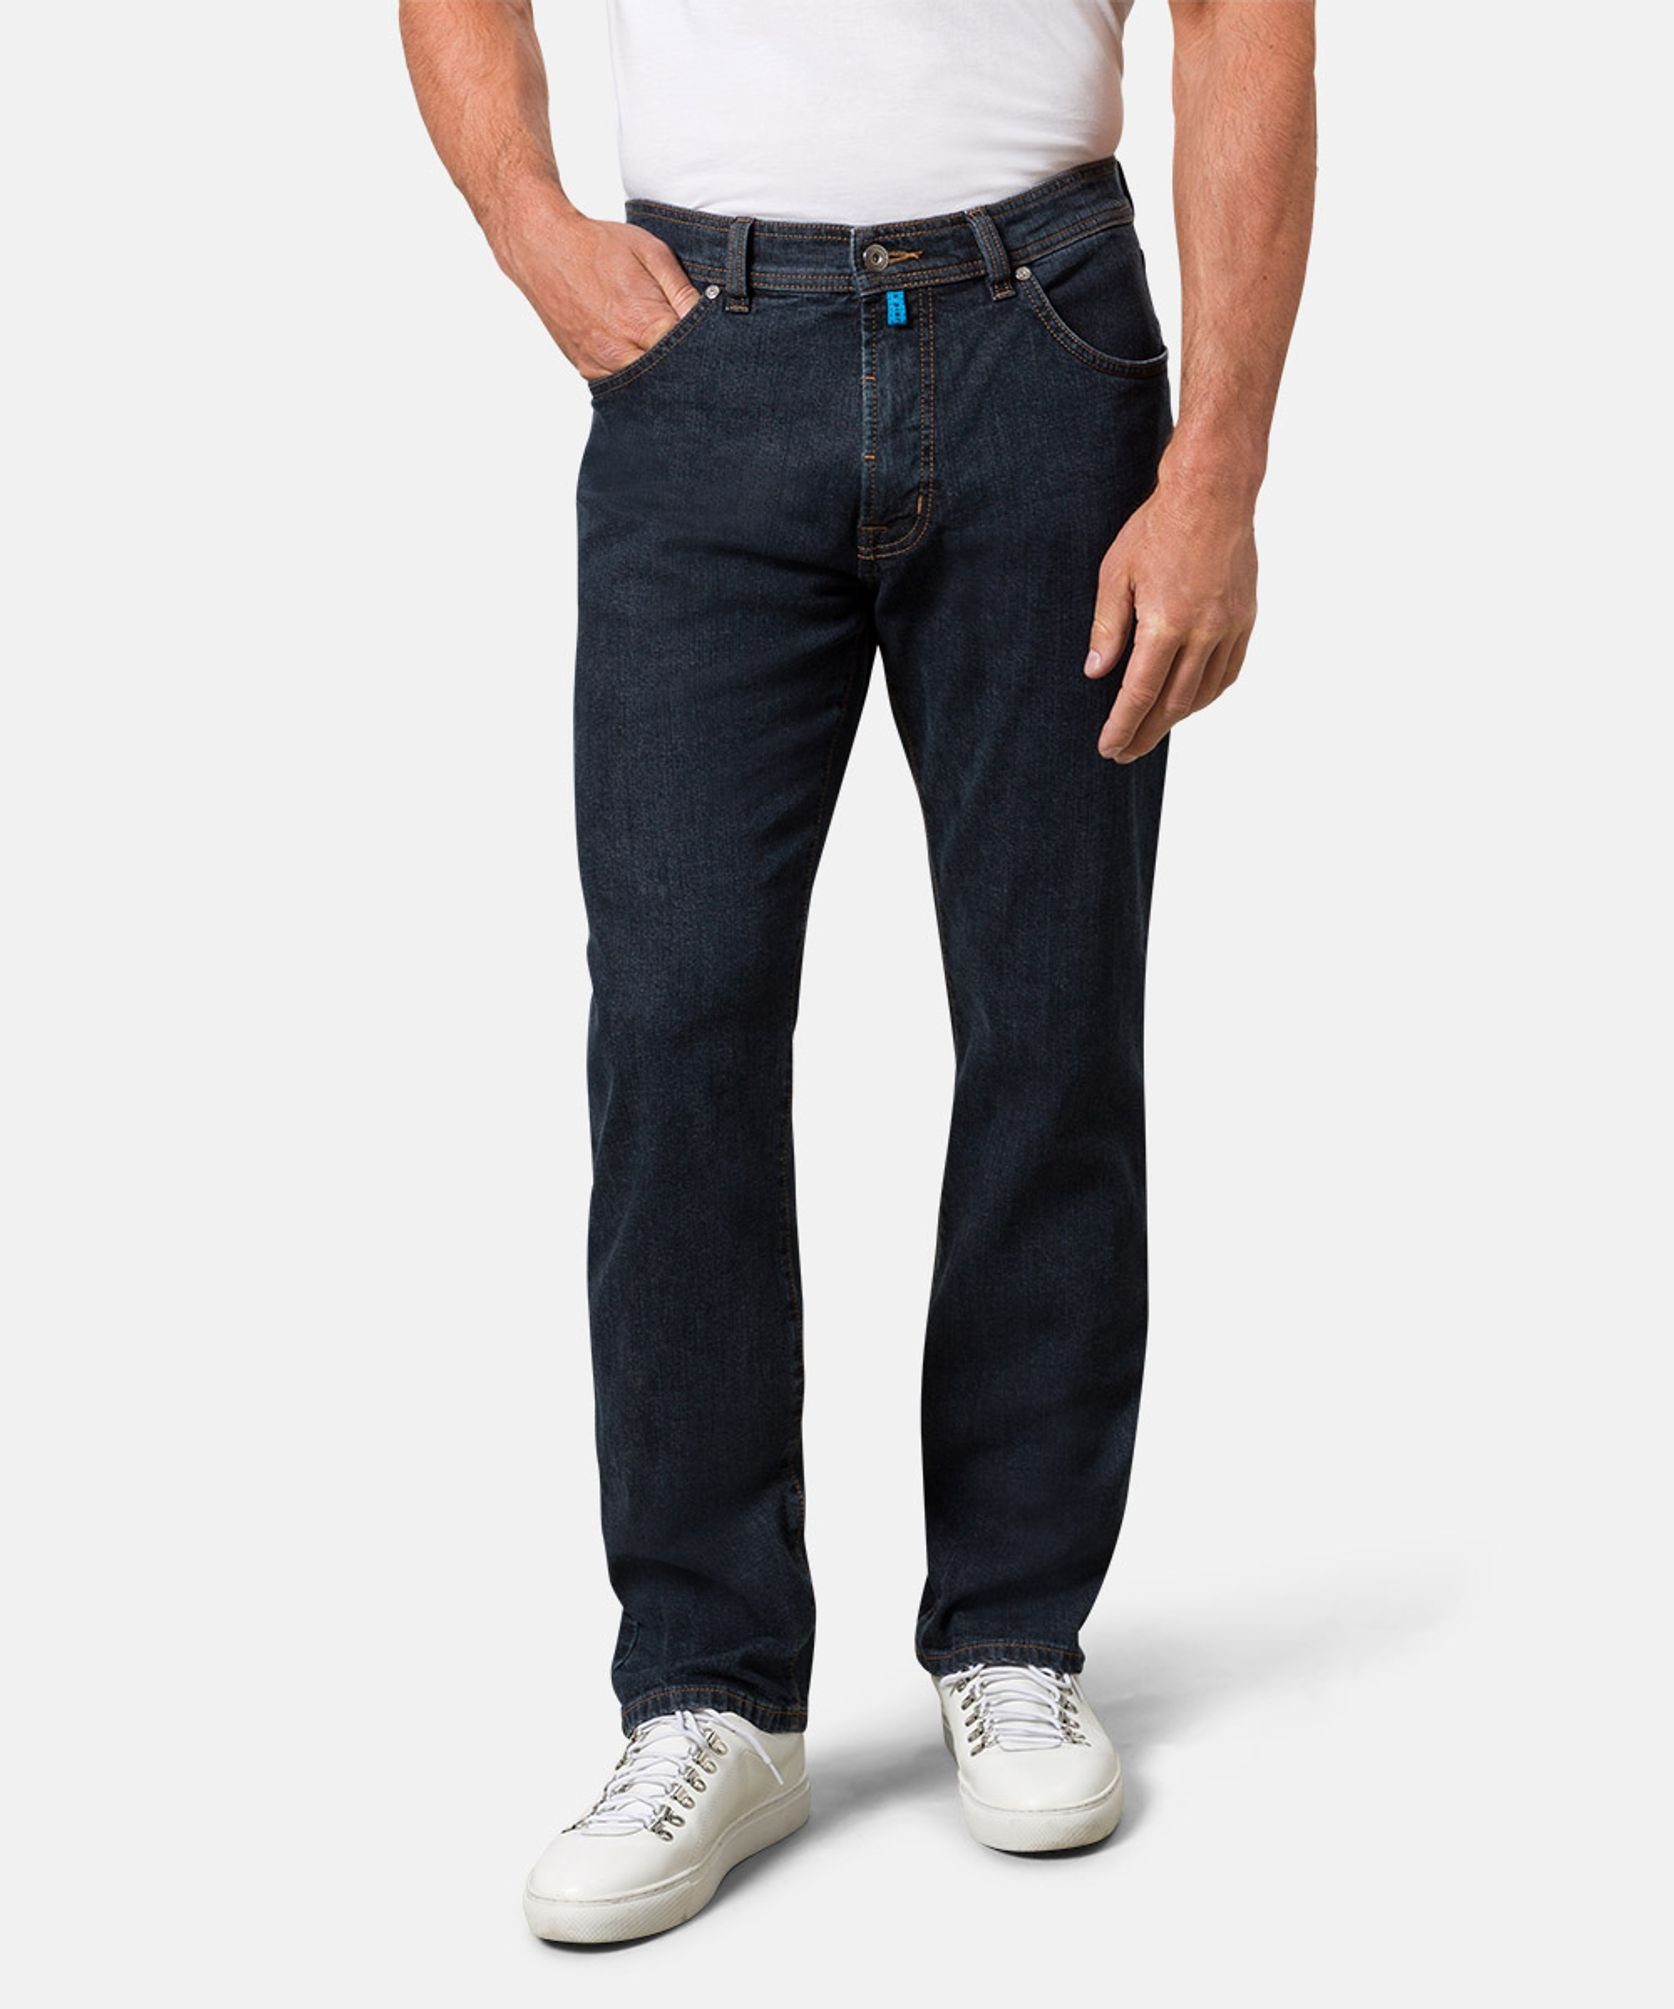 C7 5-Pocket-Jeans Pierre Cardin 32310.7003